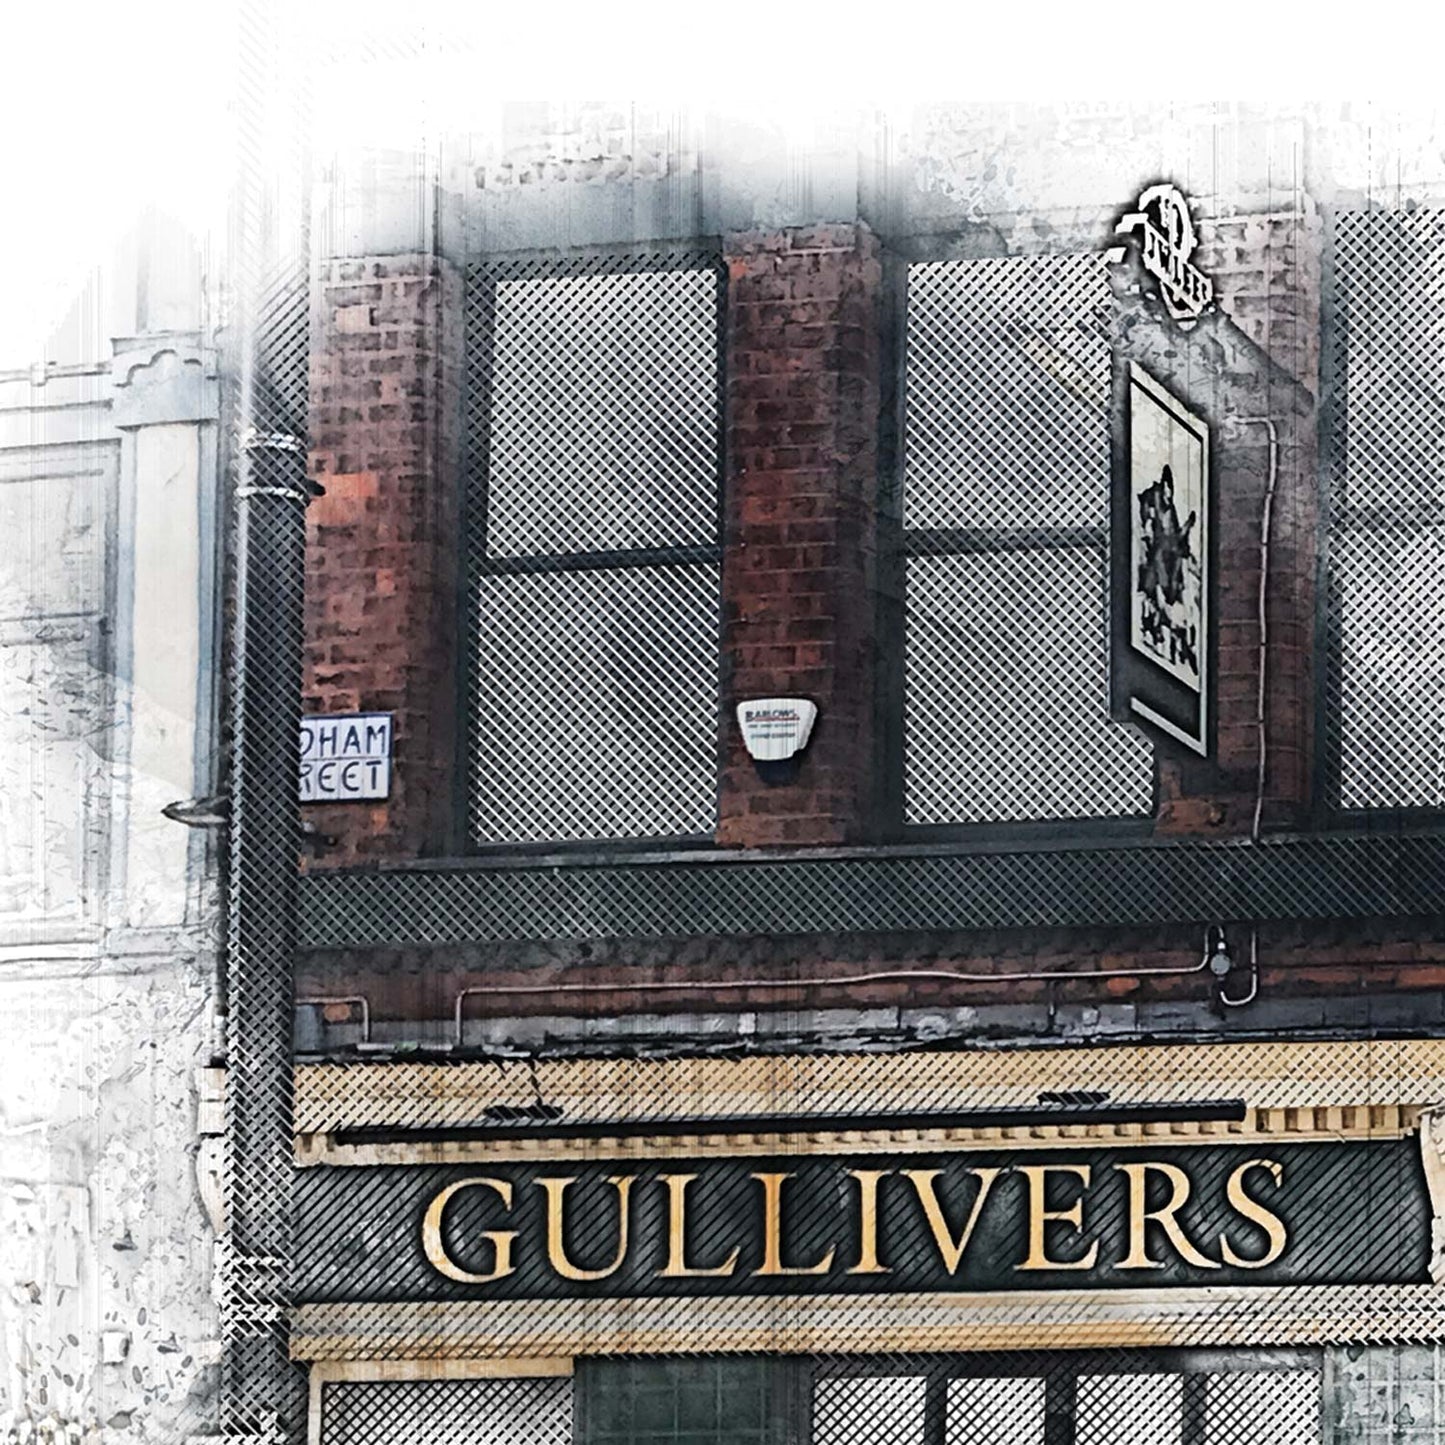 Gullivers Pub